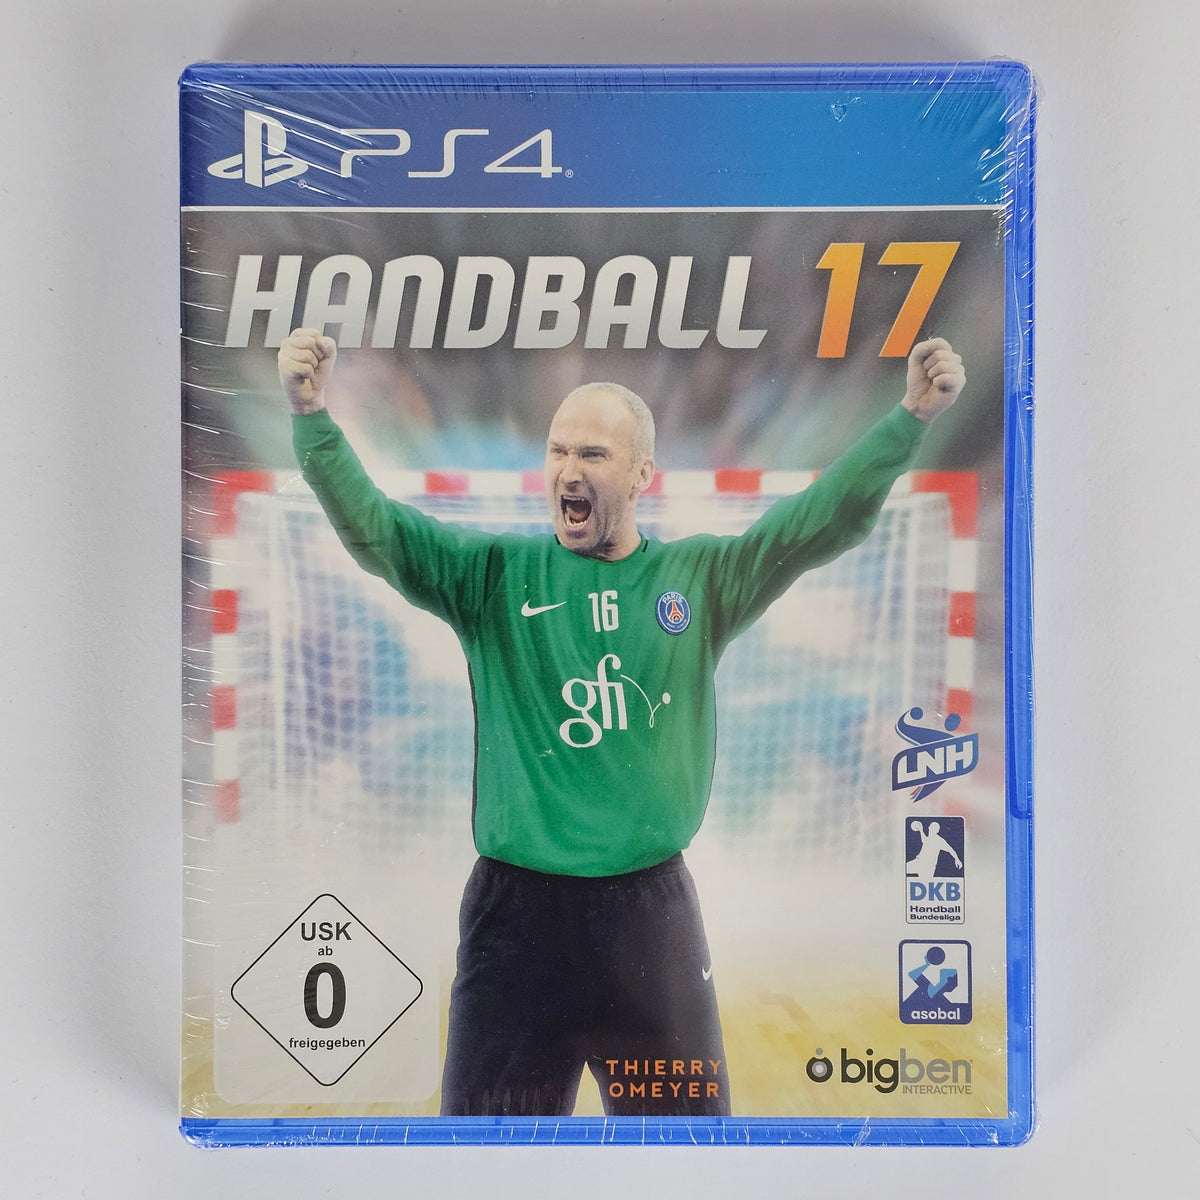 Handball 17   Playstation 4 [PS4]